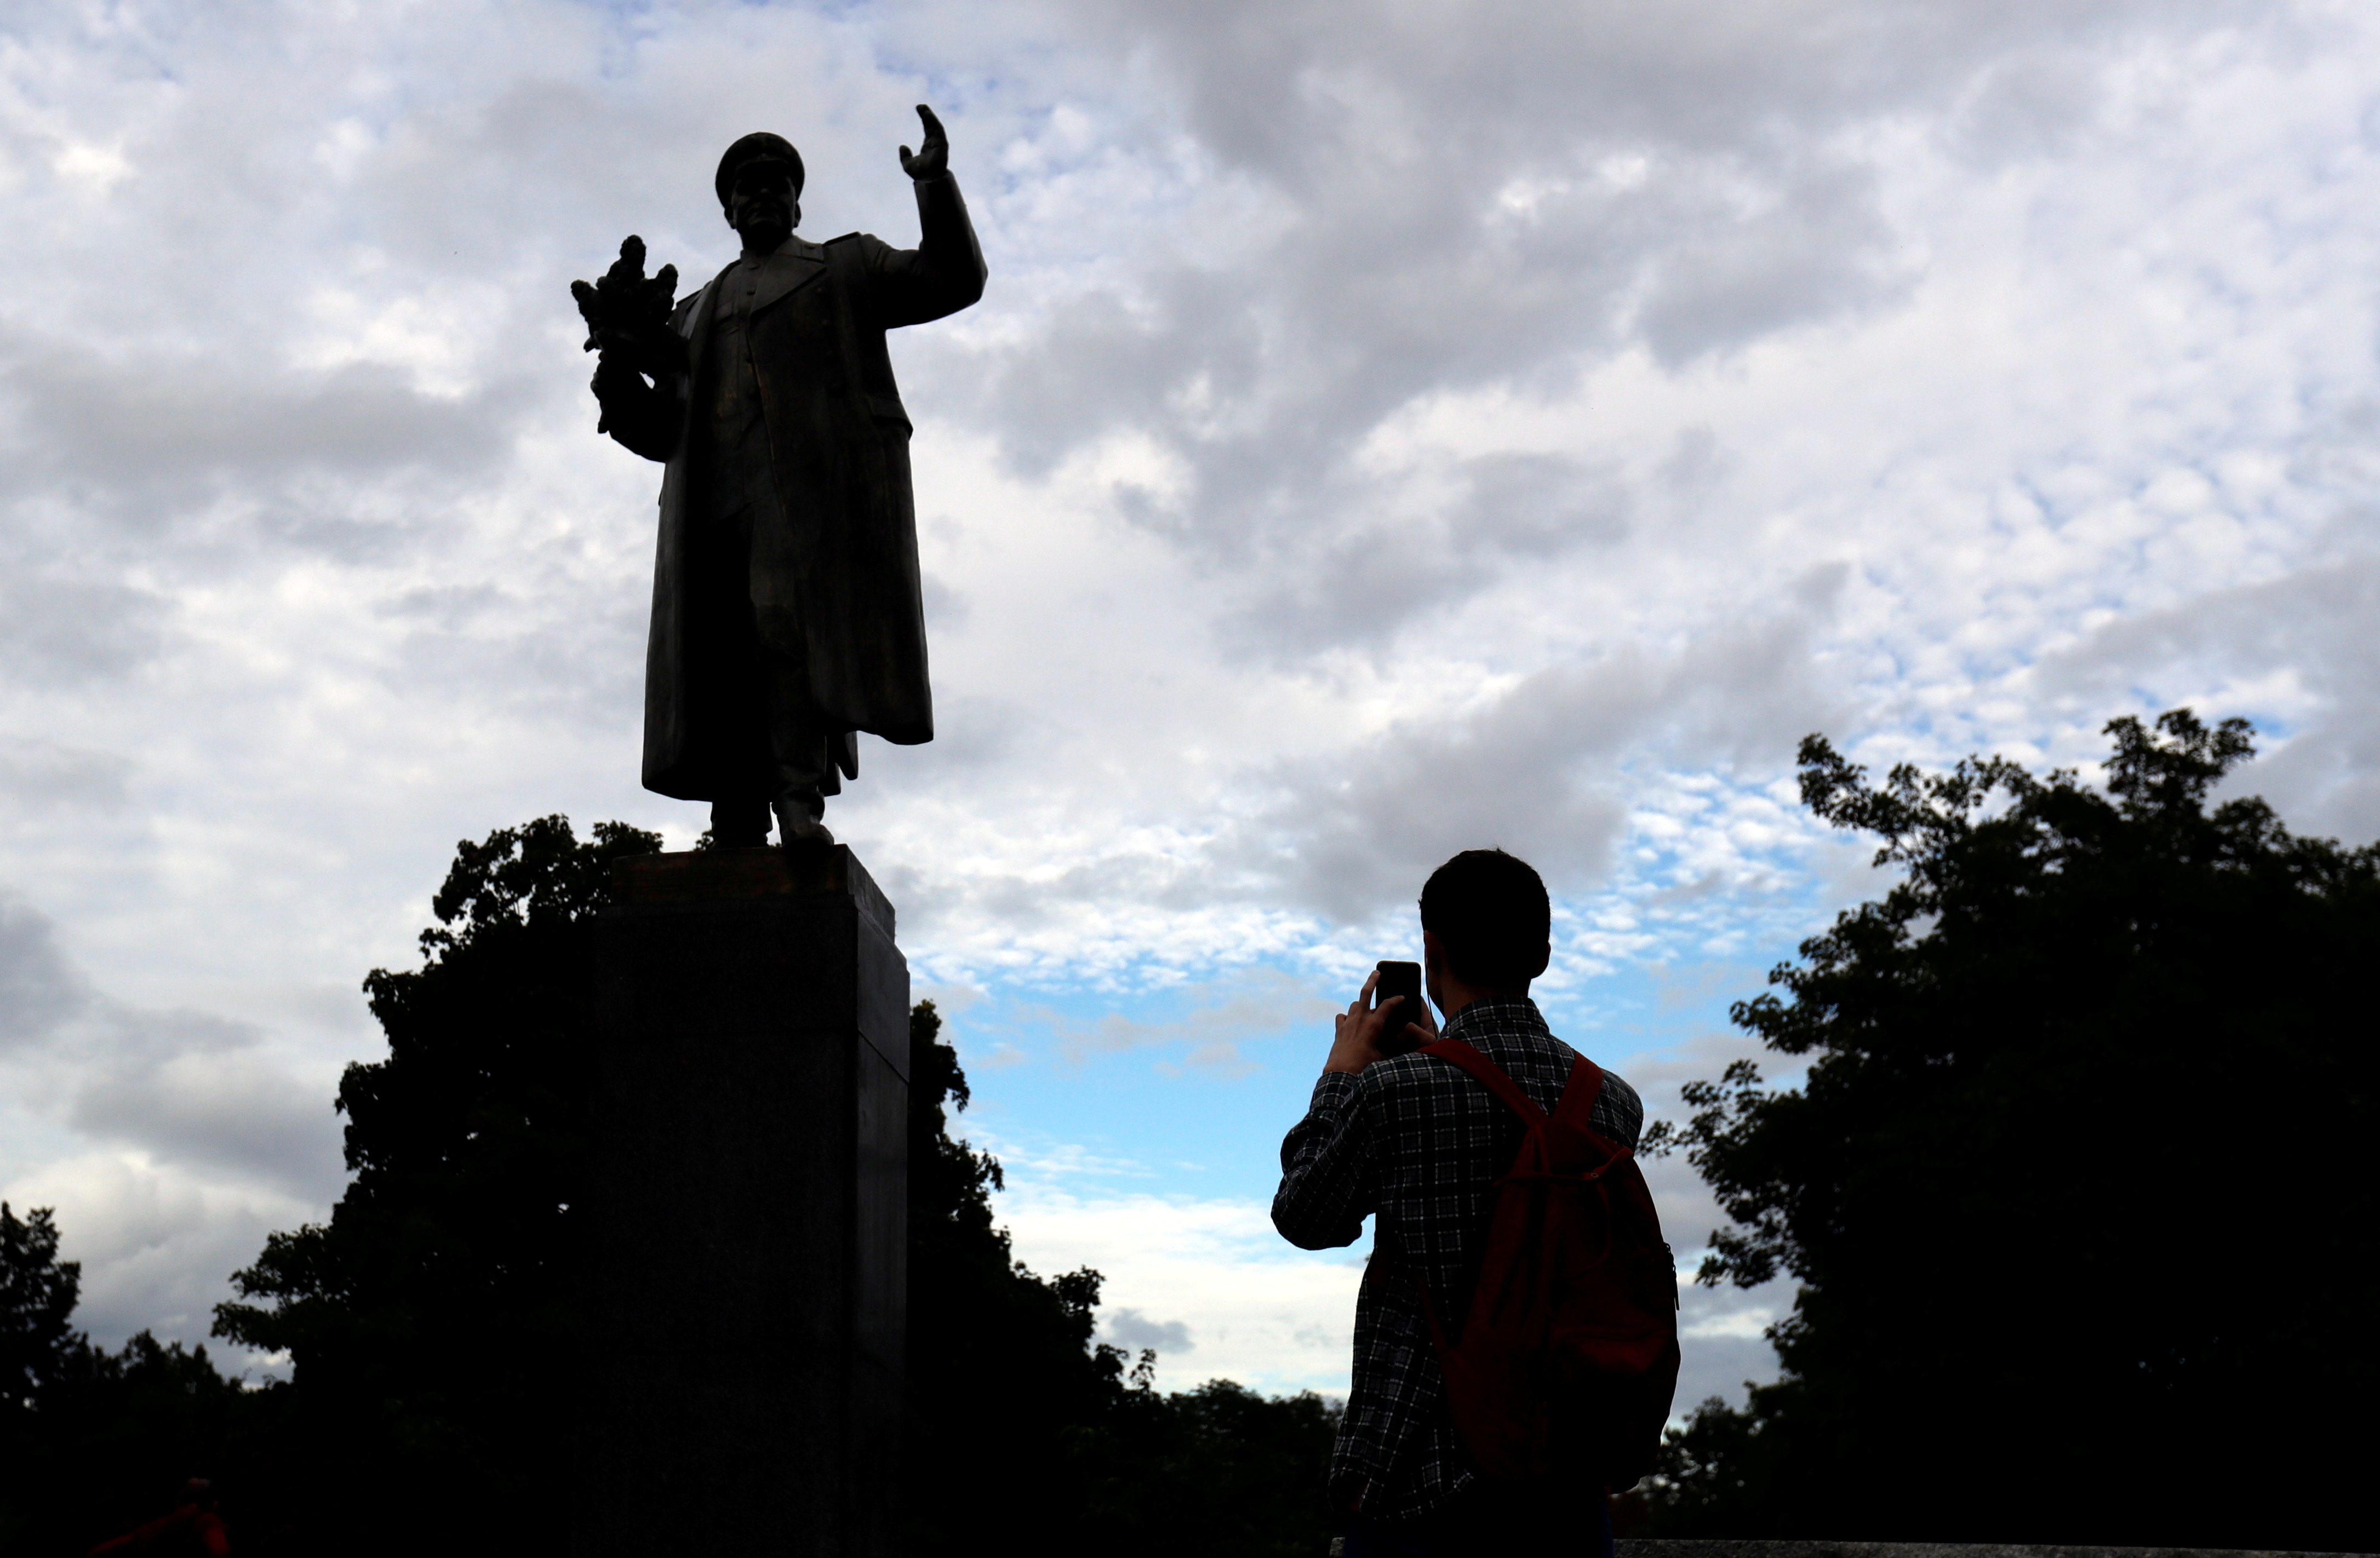 Un hombre toma una foto del monumento del comandante soviético de la Segunda Guerra Mundial Iván Stepanovic Konev en Praga, República Checa, el 12 de septiembre de 2019 (REUTERS/David W Cerny/Foto de archivo)